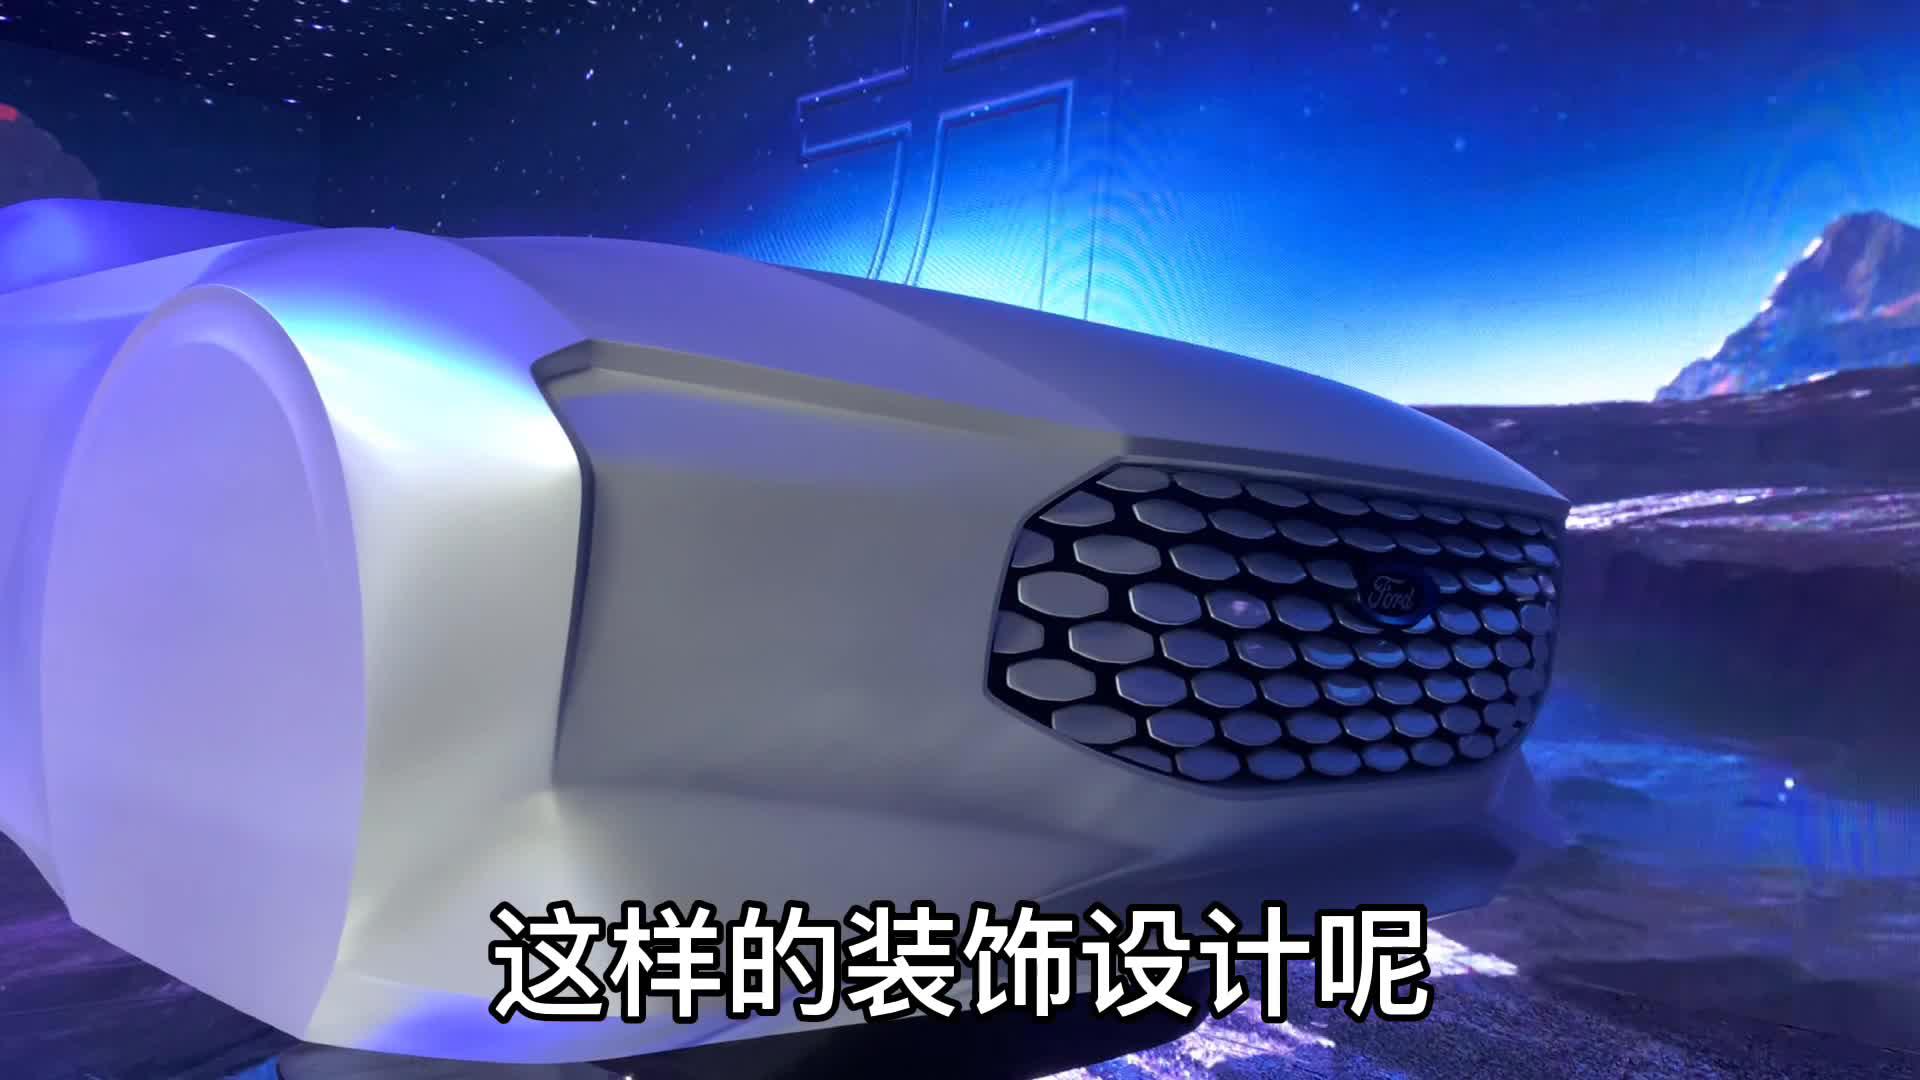 福特中国展示全新一代设计语言，将很快落地到产品